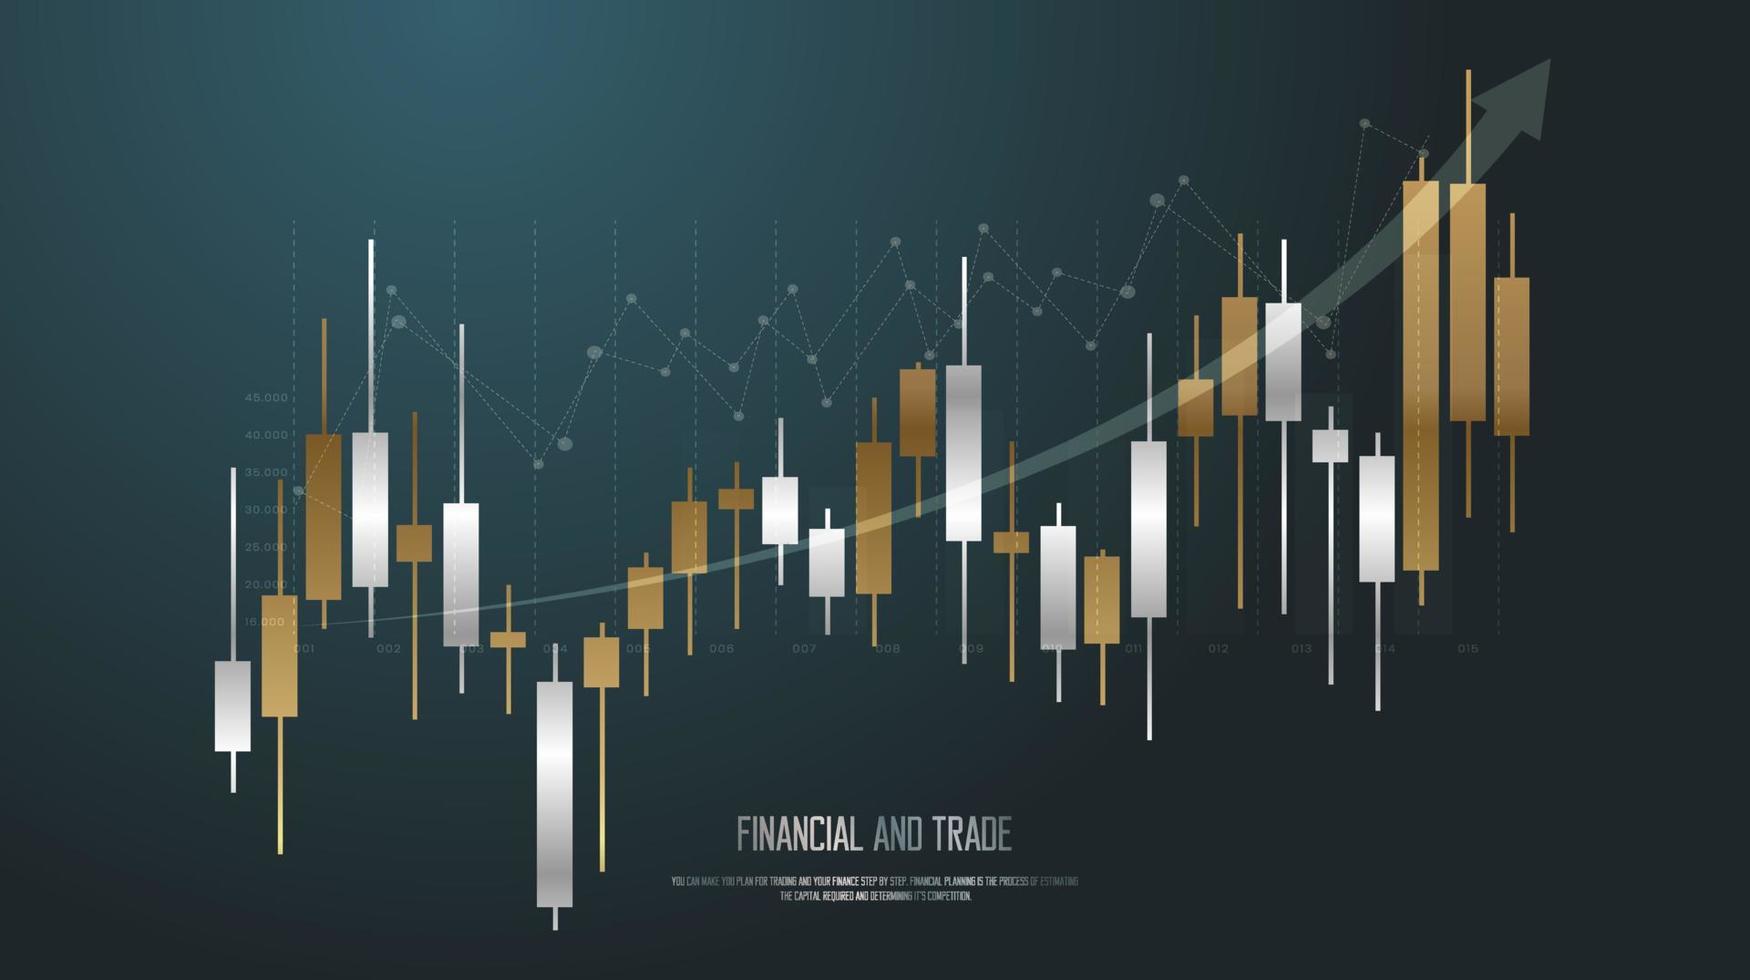 linha de tendência do gráfico de barras de negociação, uma tendência do mercado de ações e design de conceito de gráficos de barras de negociação forex para investimento financeiro, gráfico de tendências econômicas vetor